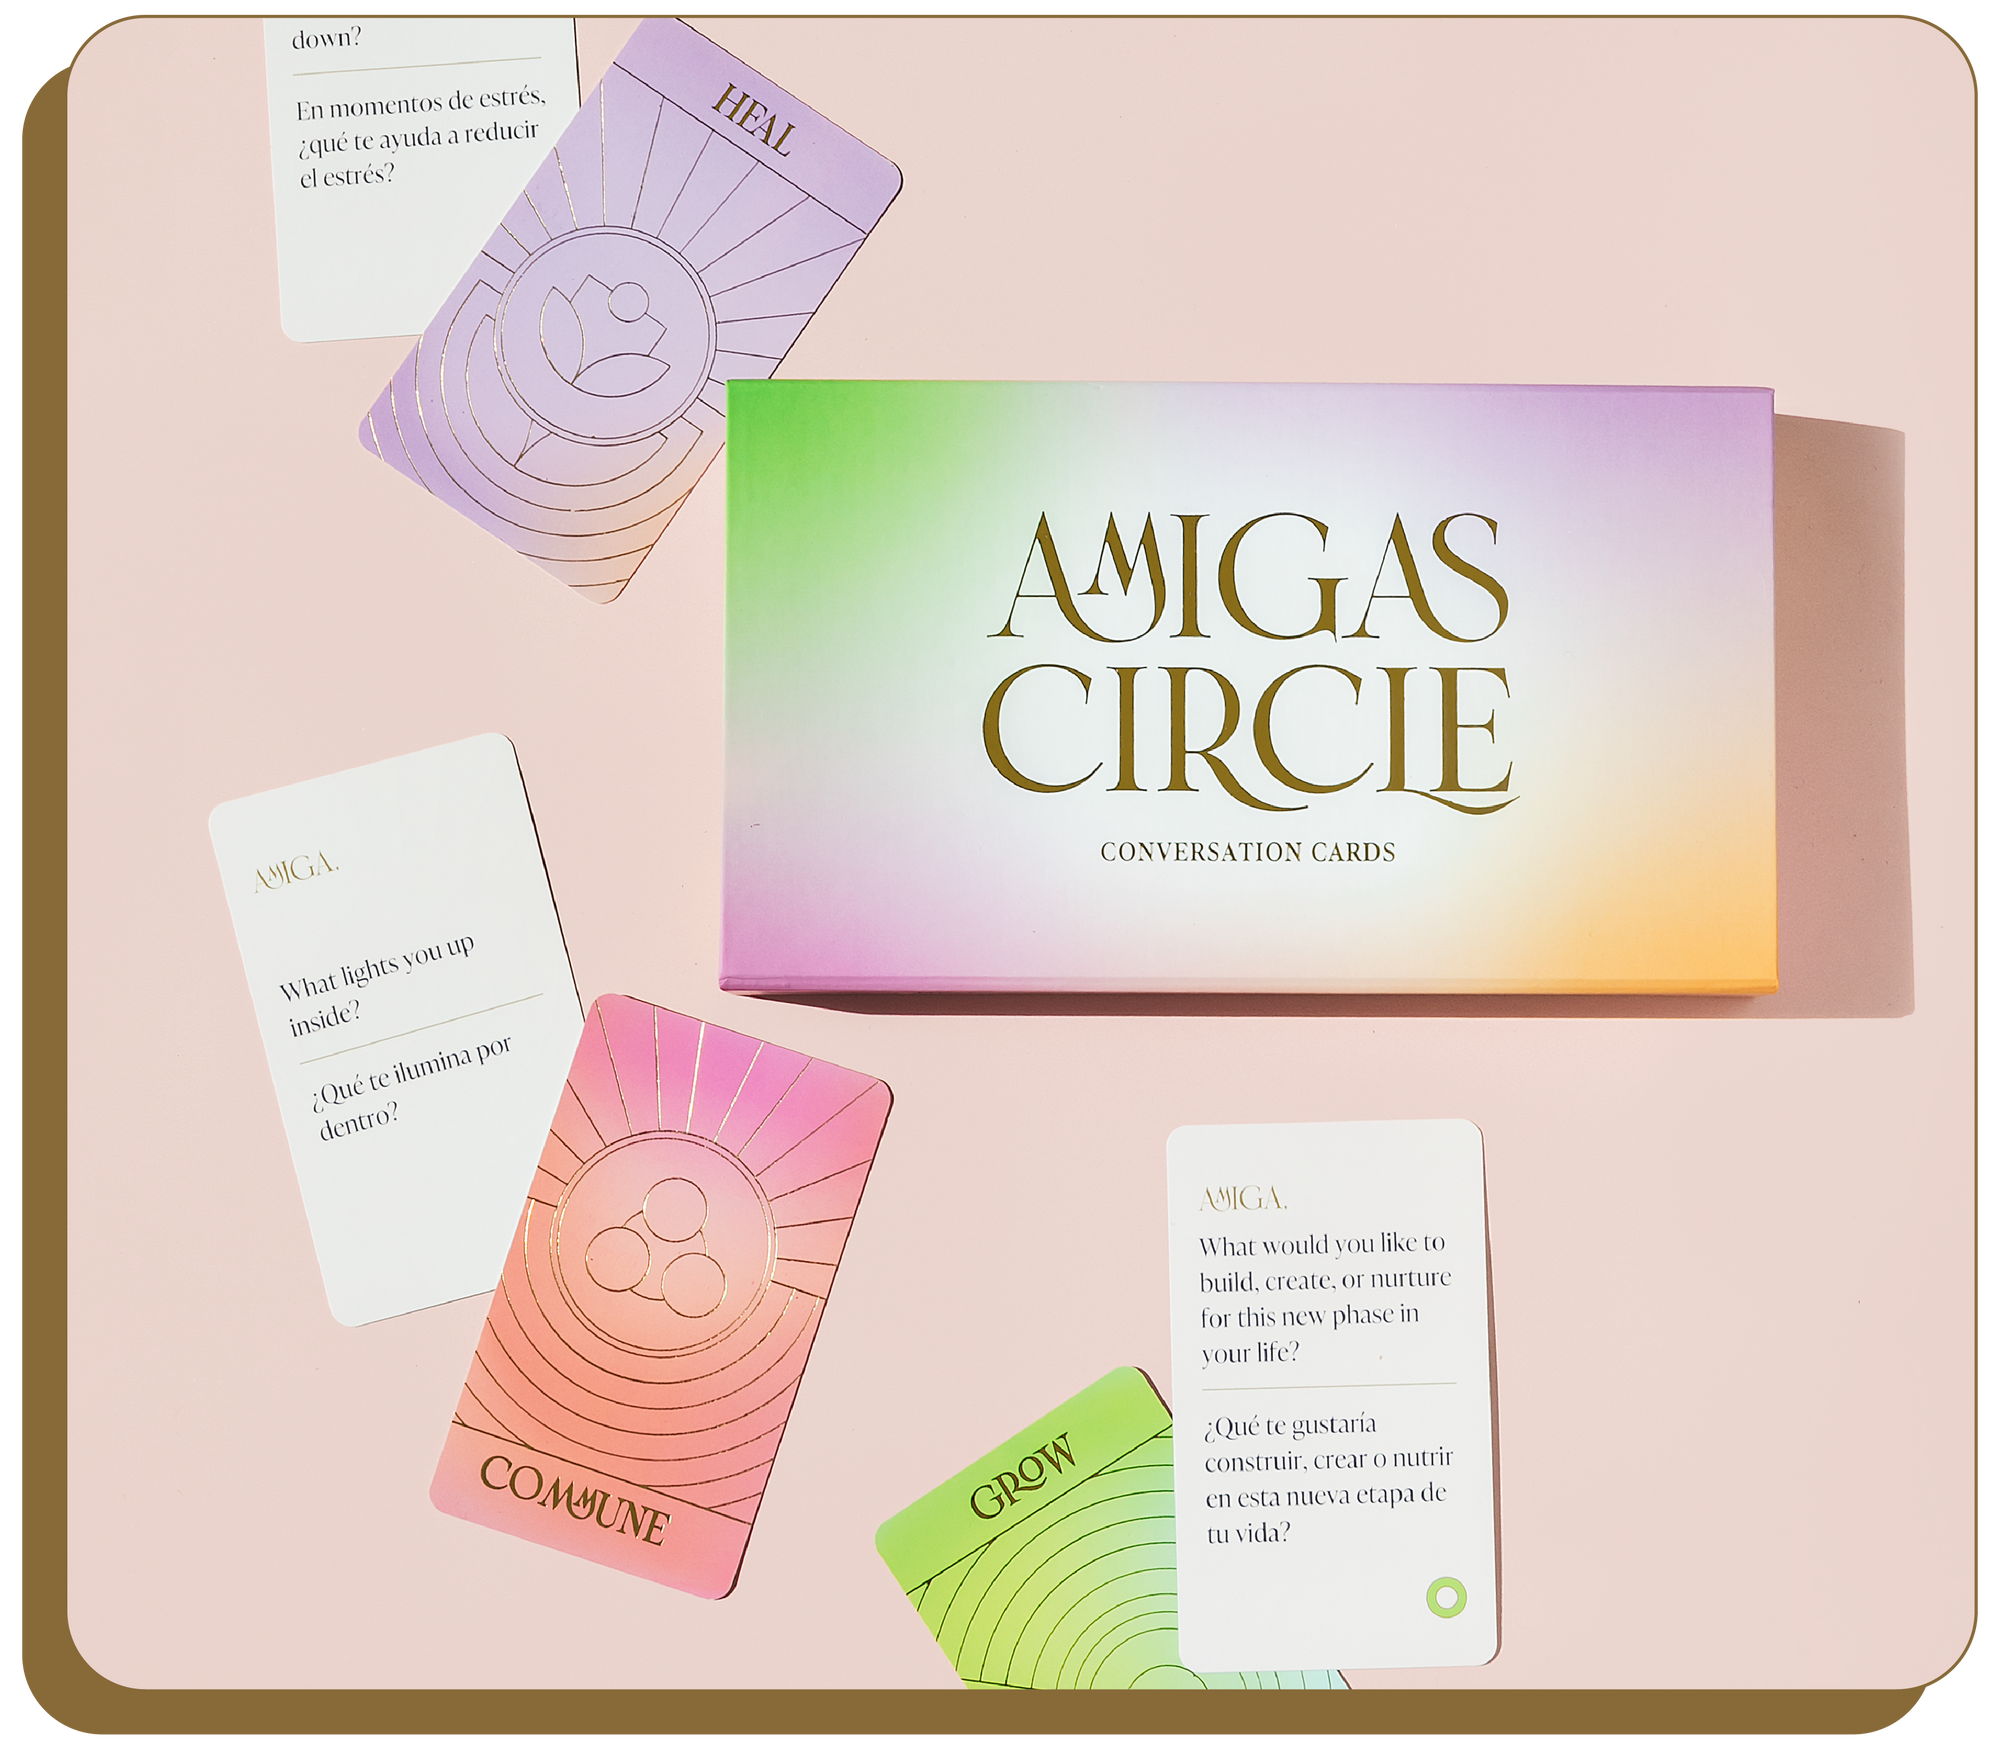 AMIGAS CIRCLE CONVERSATION CARDS